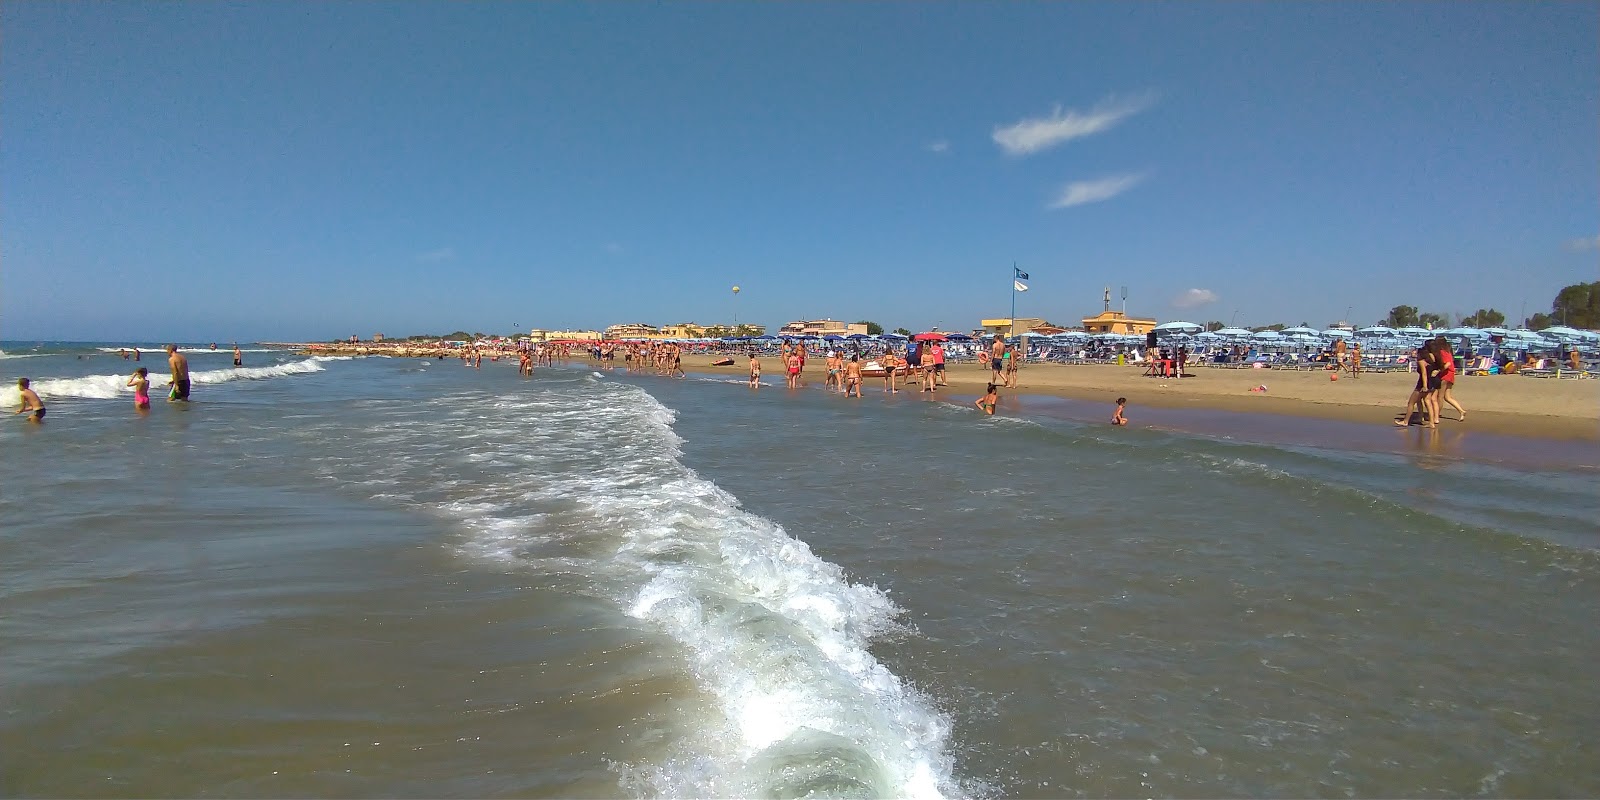 Zdjęcie Spiaggia Attrezzata z powierzchnią niebieska woda